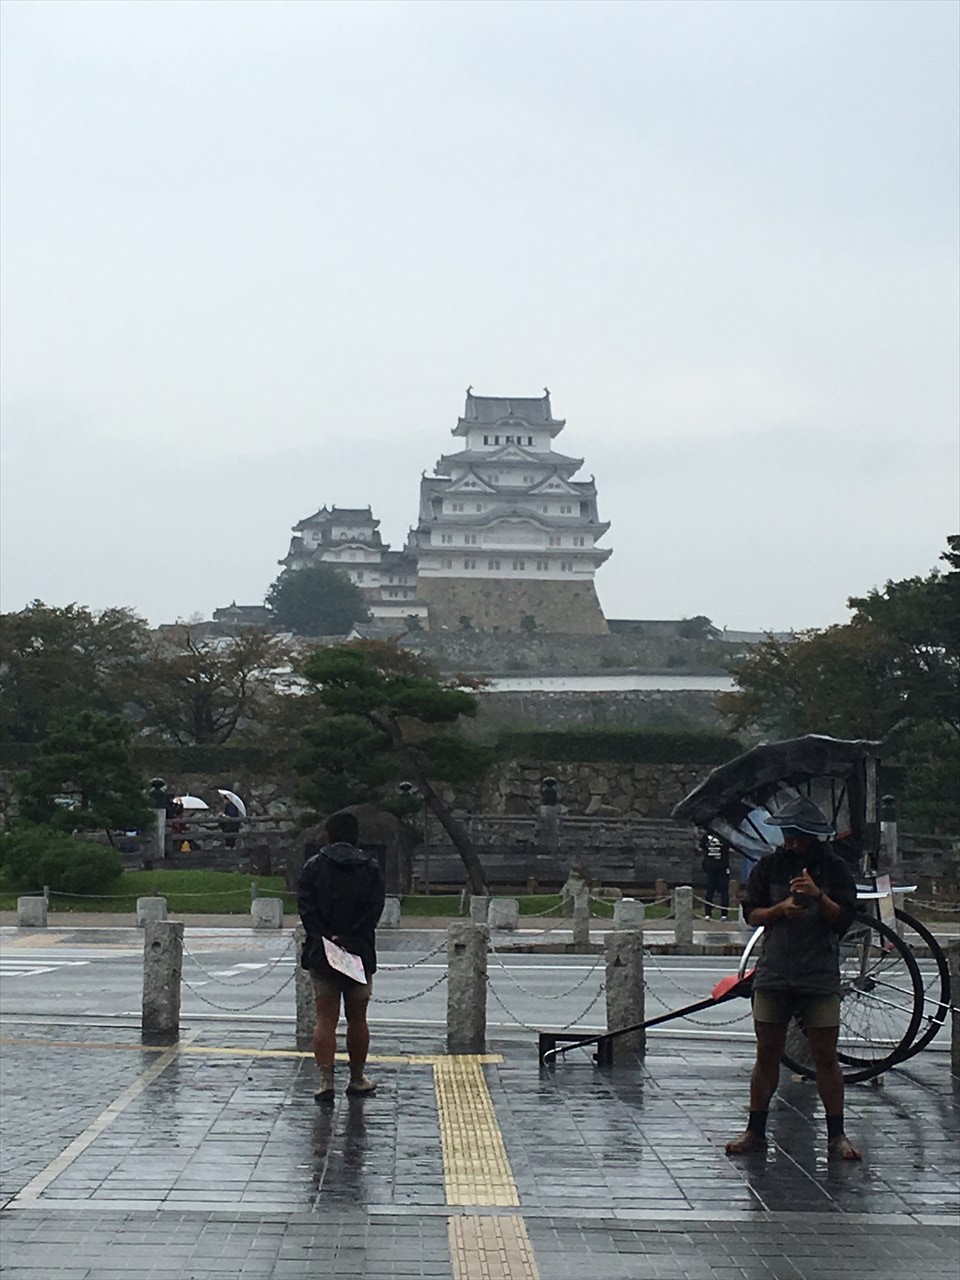 9日目 外国人だらけの姫路城 雨のはりまシーサイドロード 国道2号で倉敷到着 小型バイクでツーリング 四国 瀬戸内海沿岸ツーリング記